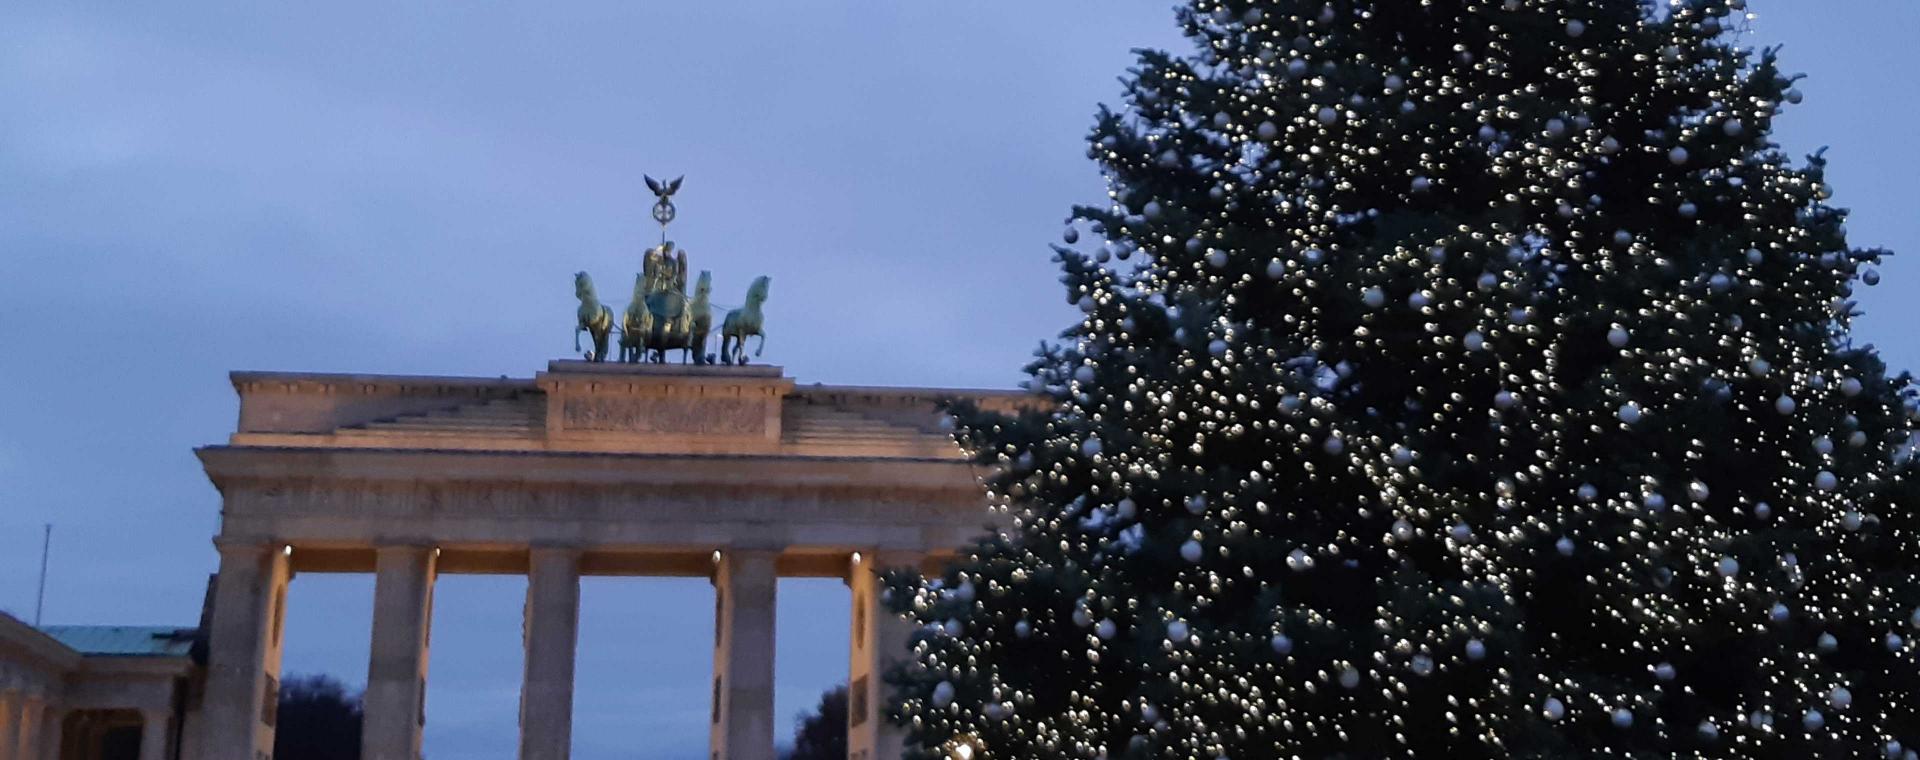 Weihnachtsbaum auf dem Pariser Platz, im Hintergrund das angeleuchtete Brandenburger Tor